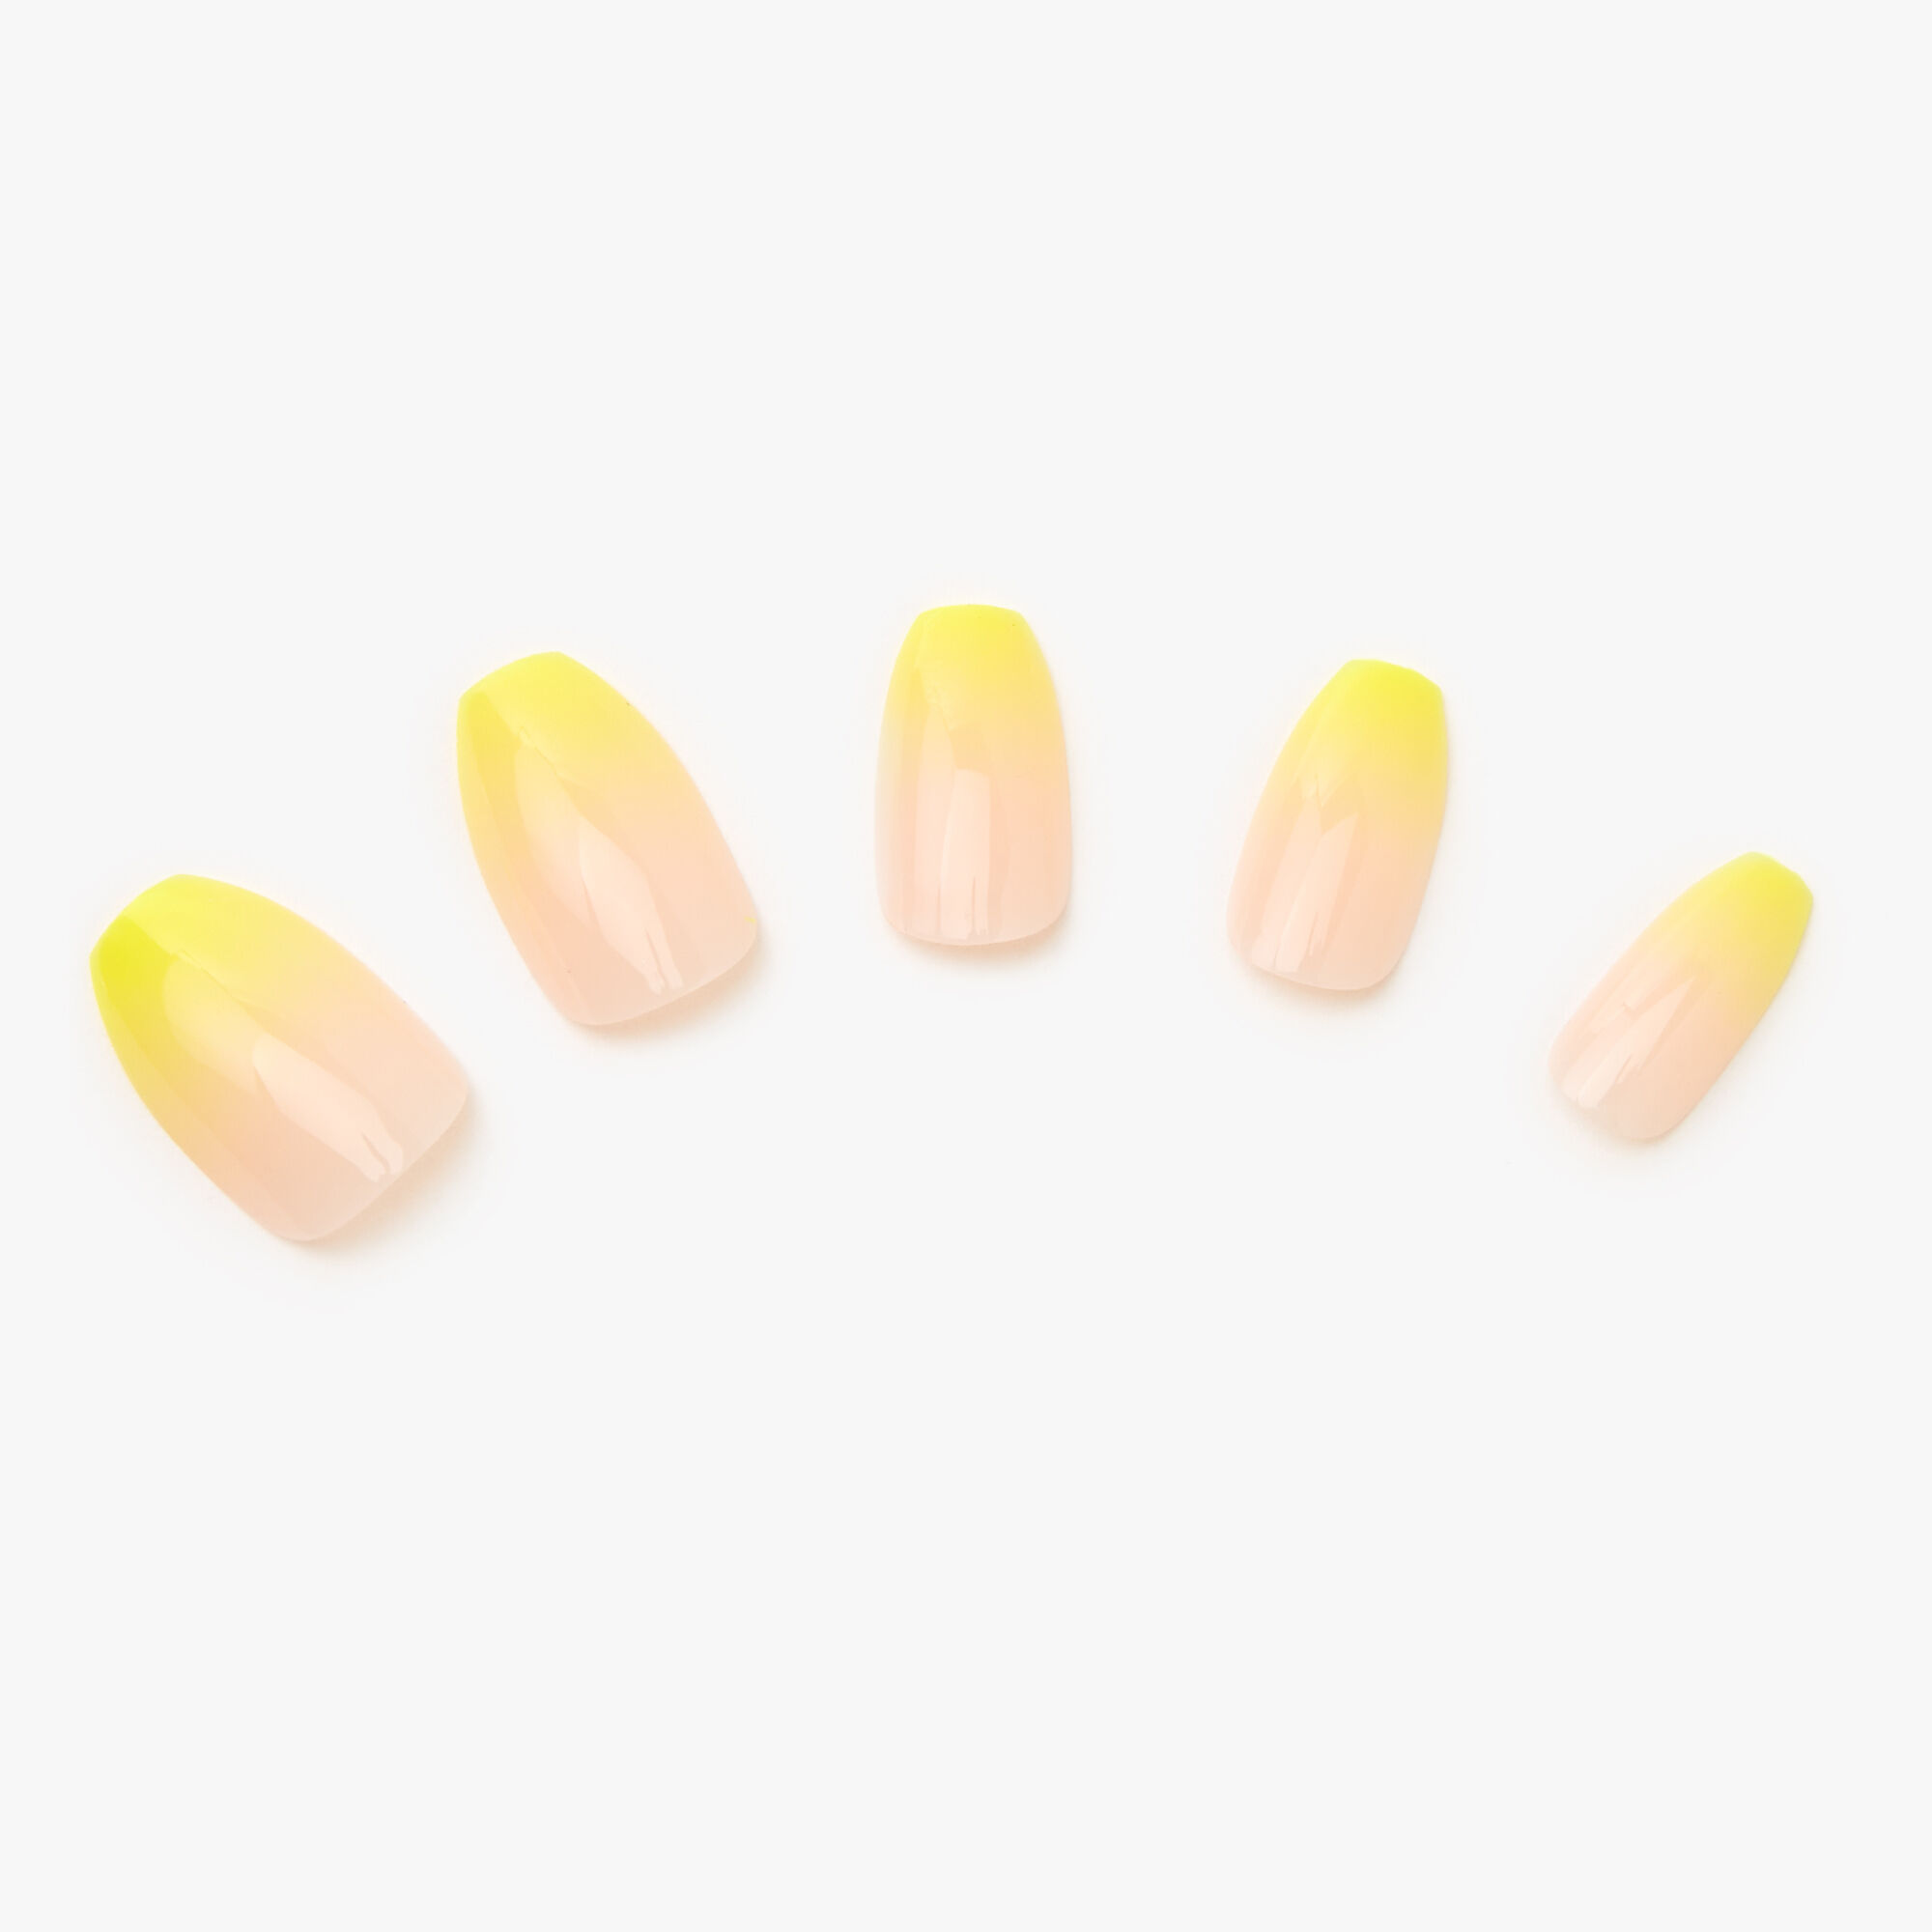 Ombre nails kết hợp màu vàng trắng là cách tuyệt vời để thể hiện phong cách thời thượng và tinh tế trong năm